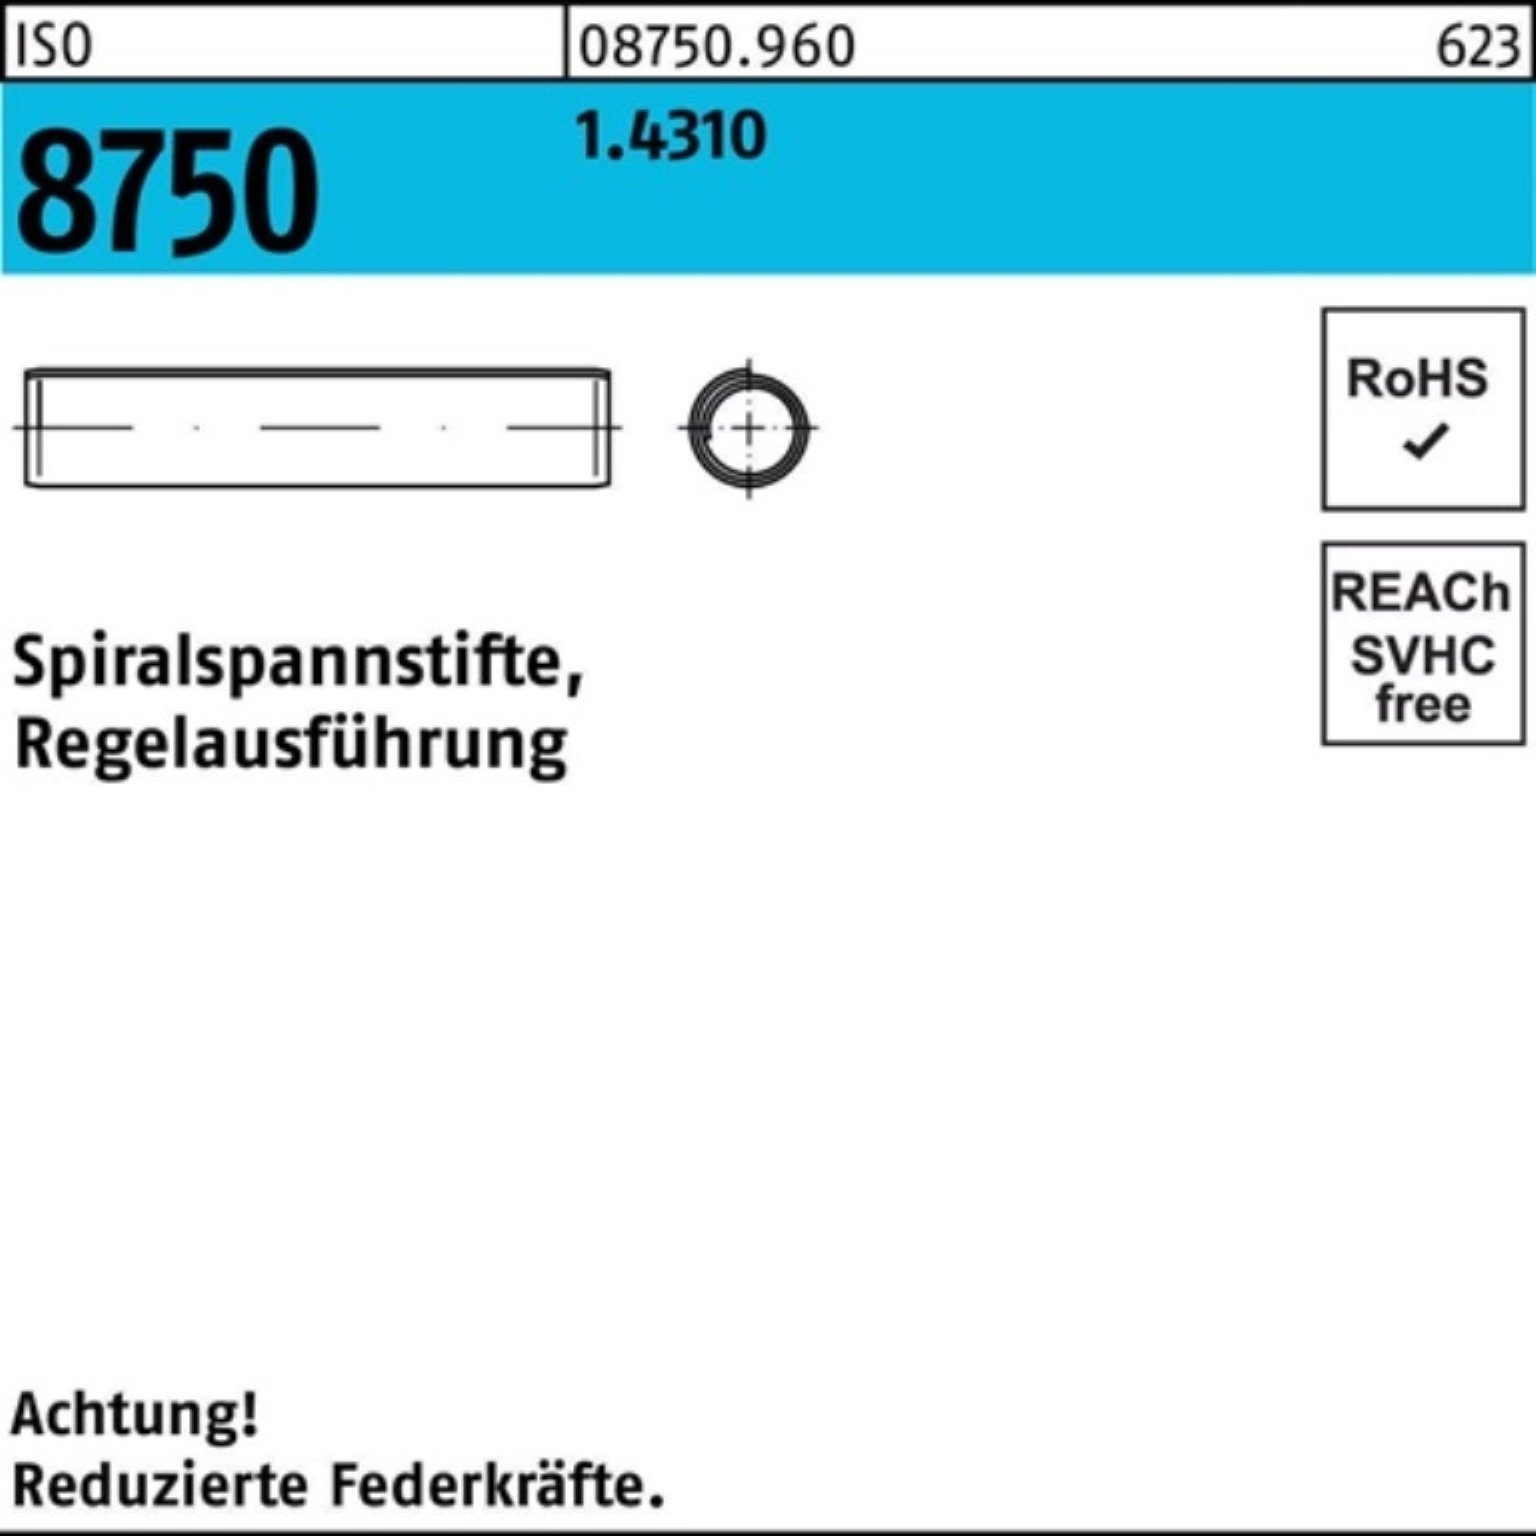 Spannstift Stüc 20 ISO 8x 1.4310 500 500er Pack 8750 Reyher Spiralspannstift Regelausf.